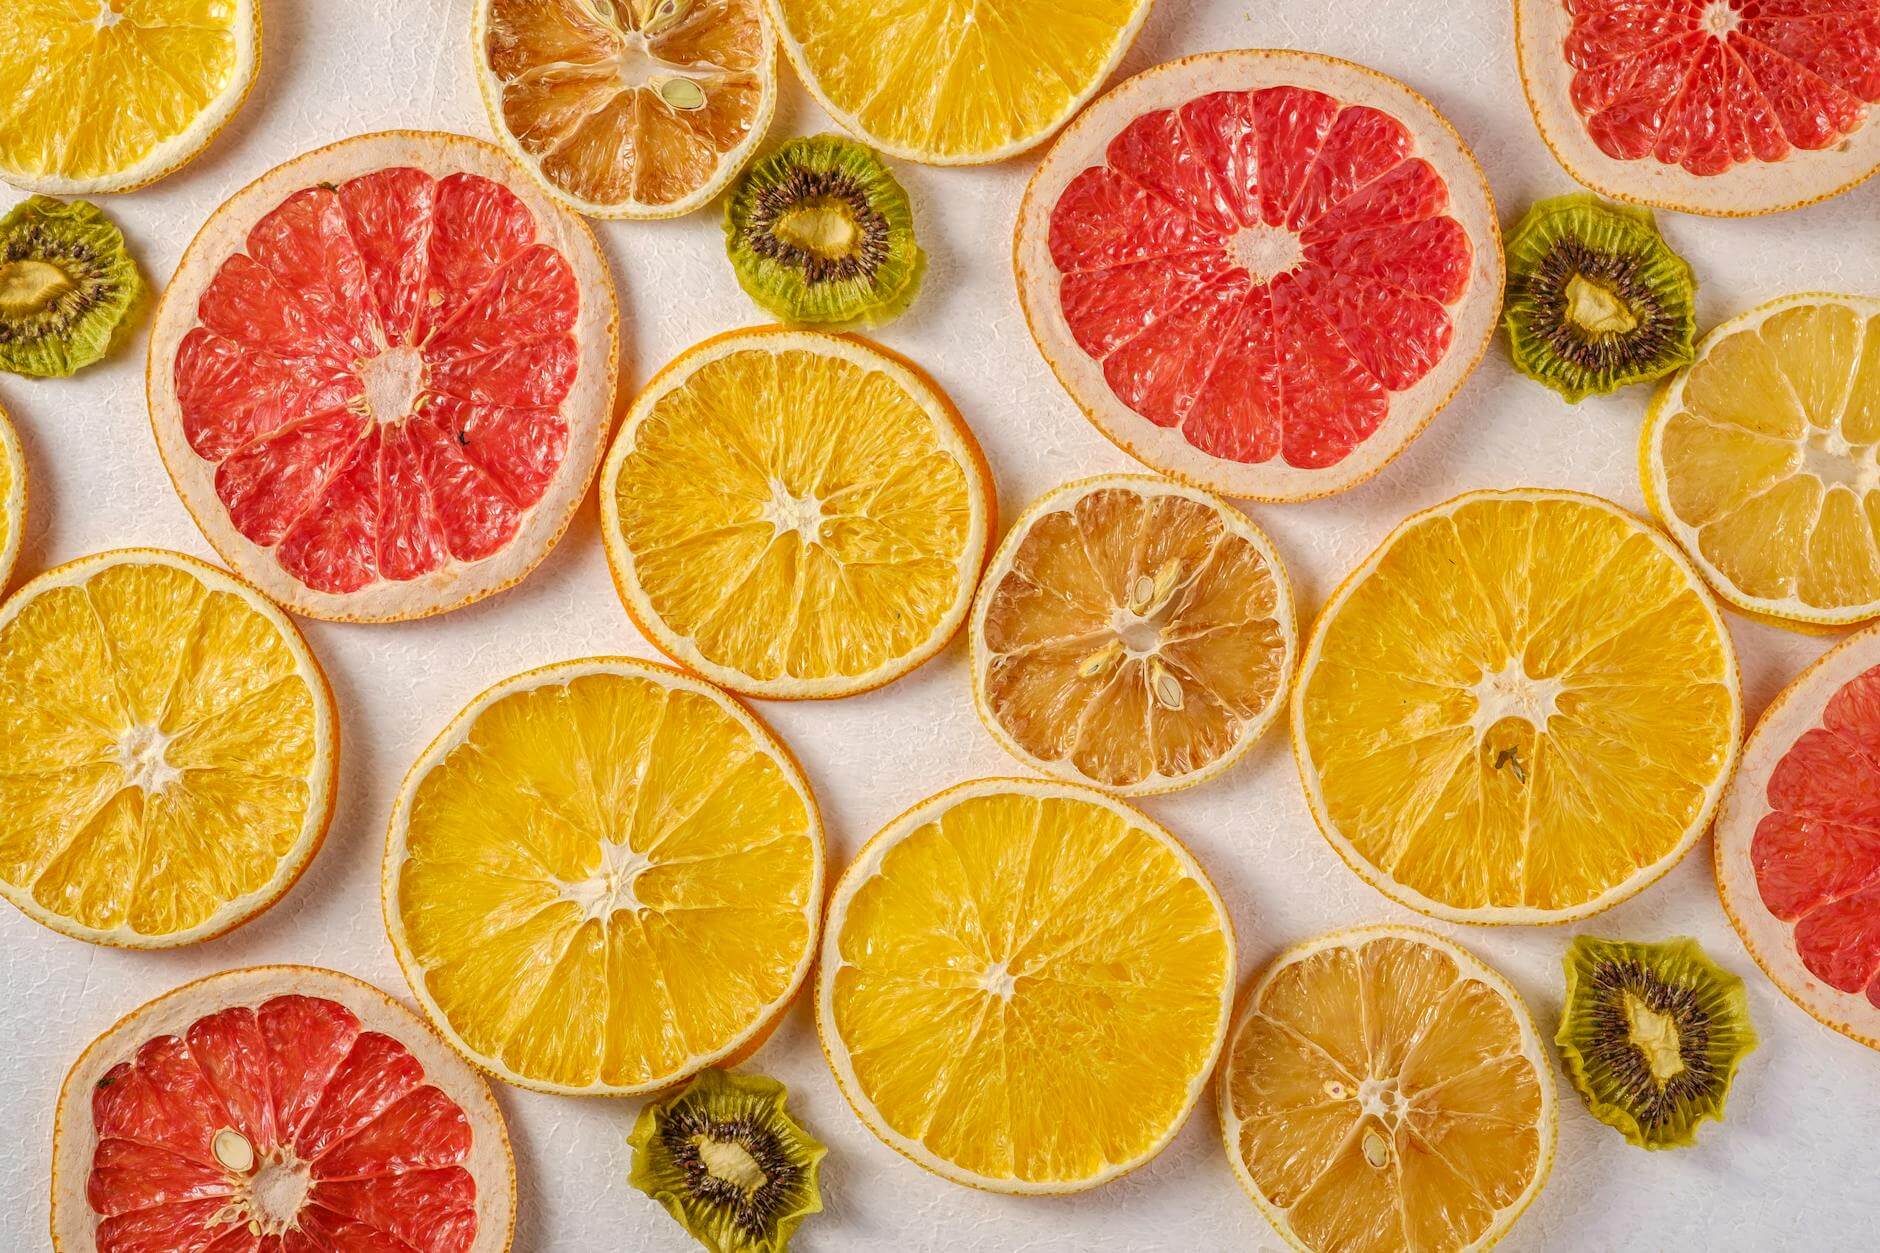 sliced oranges grapefruit and kiwi fruit